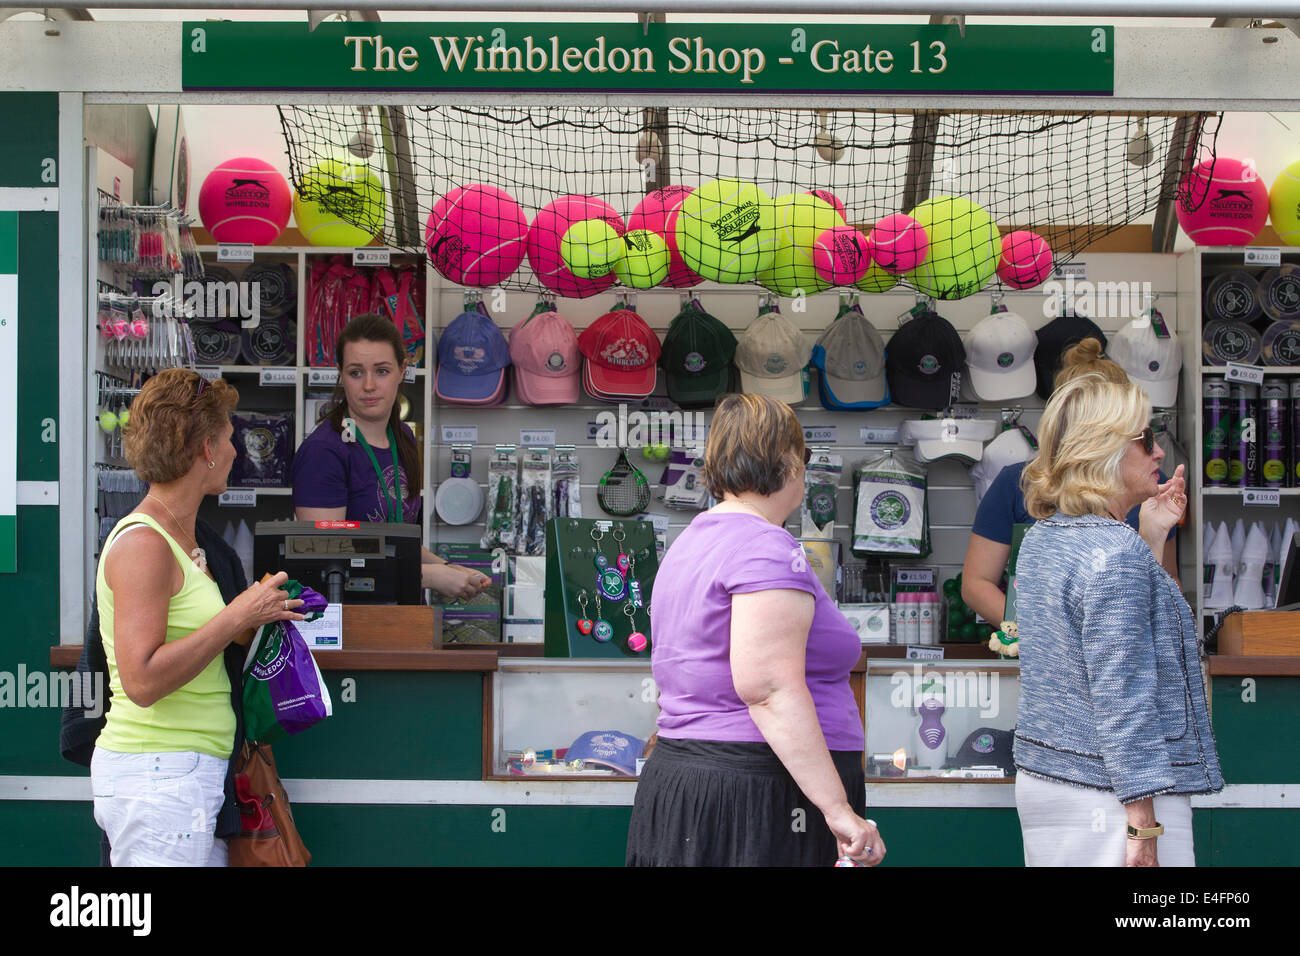 Wimbledon tennis shop hi-res stock photography and images - Alamy